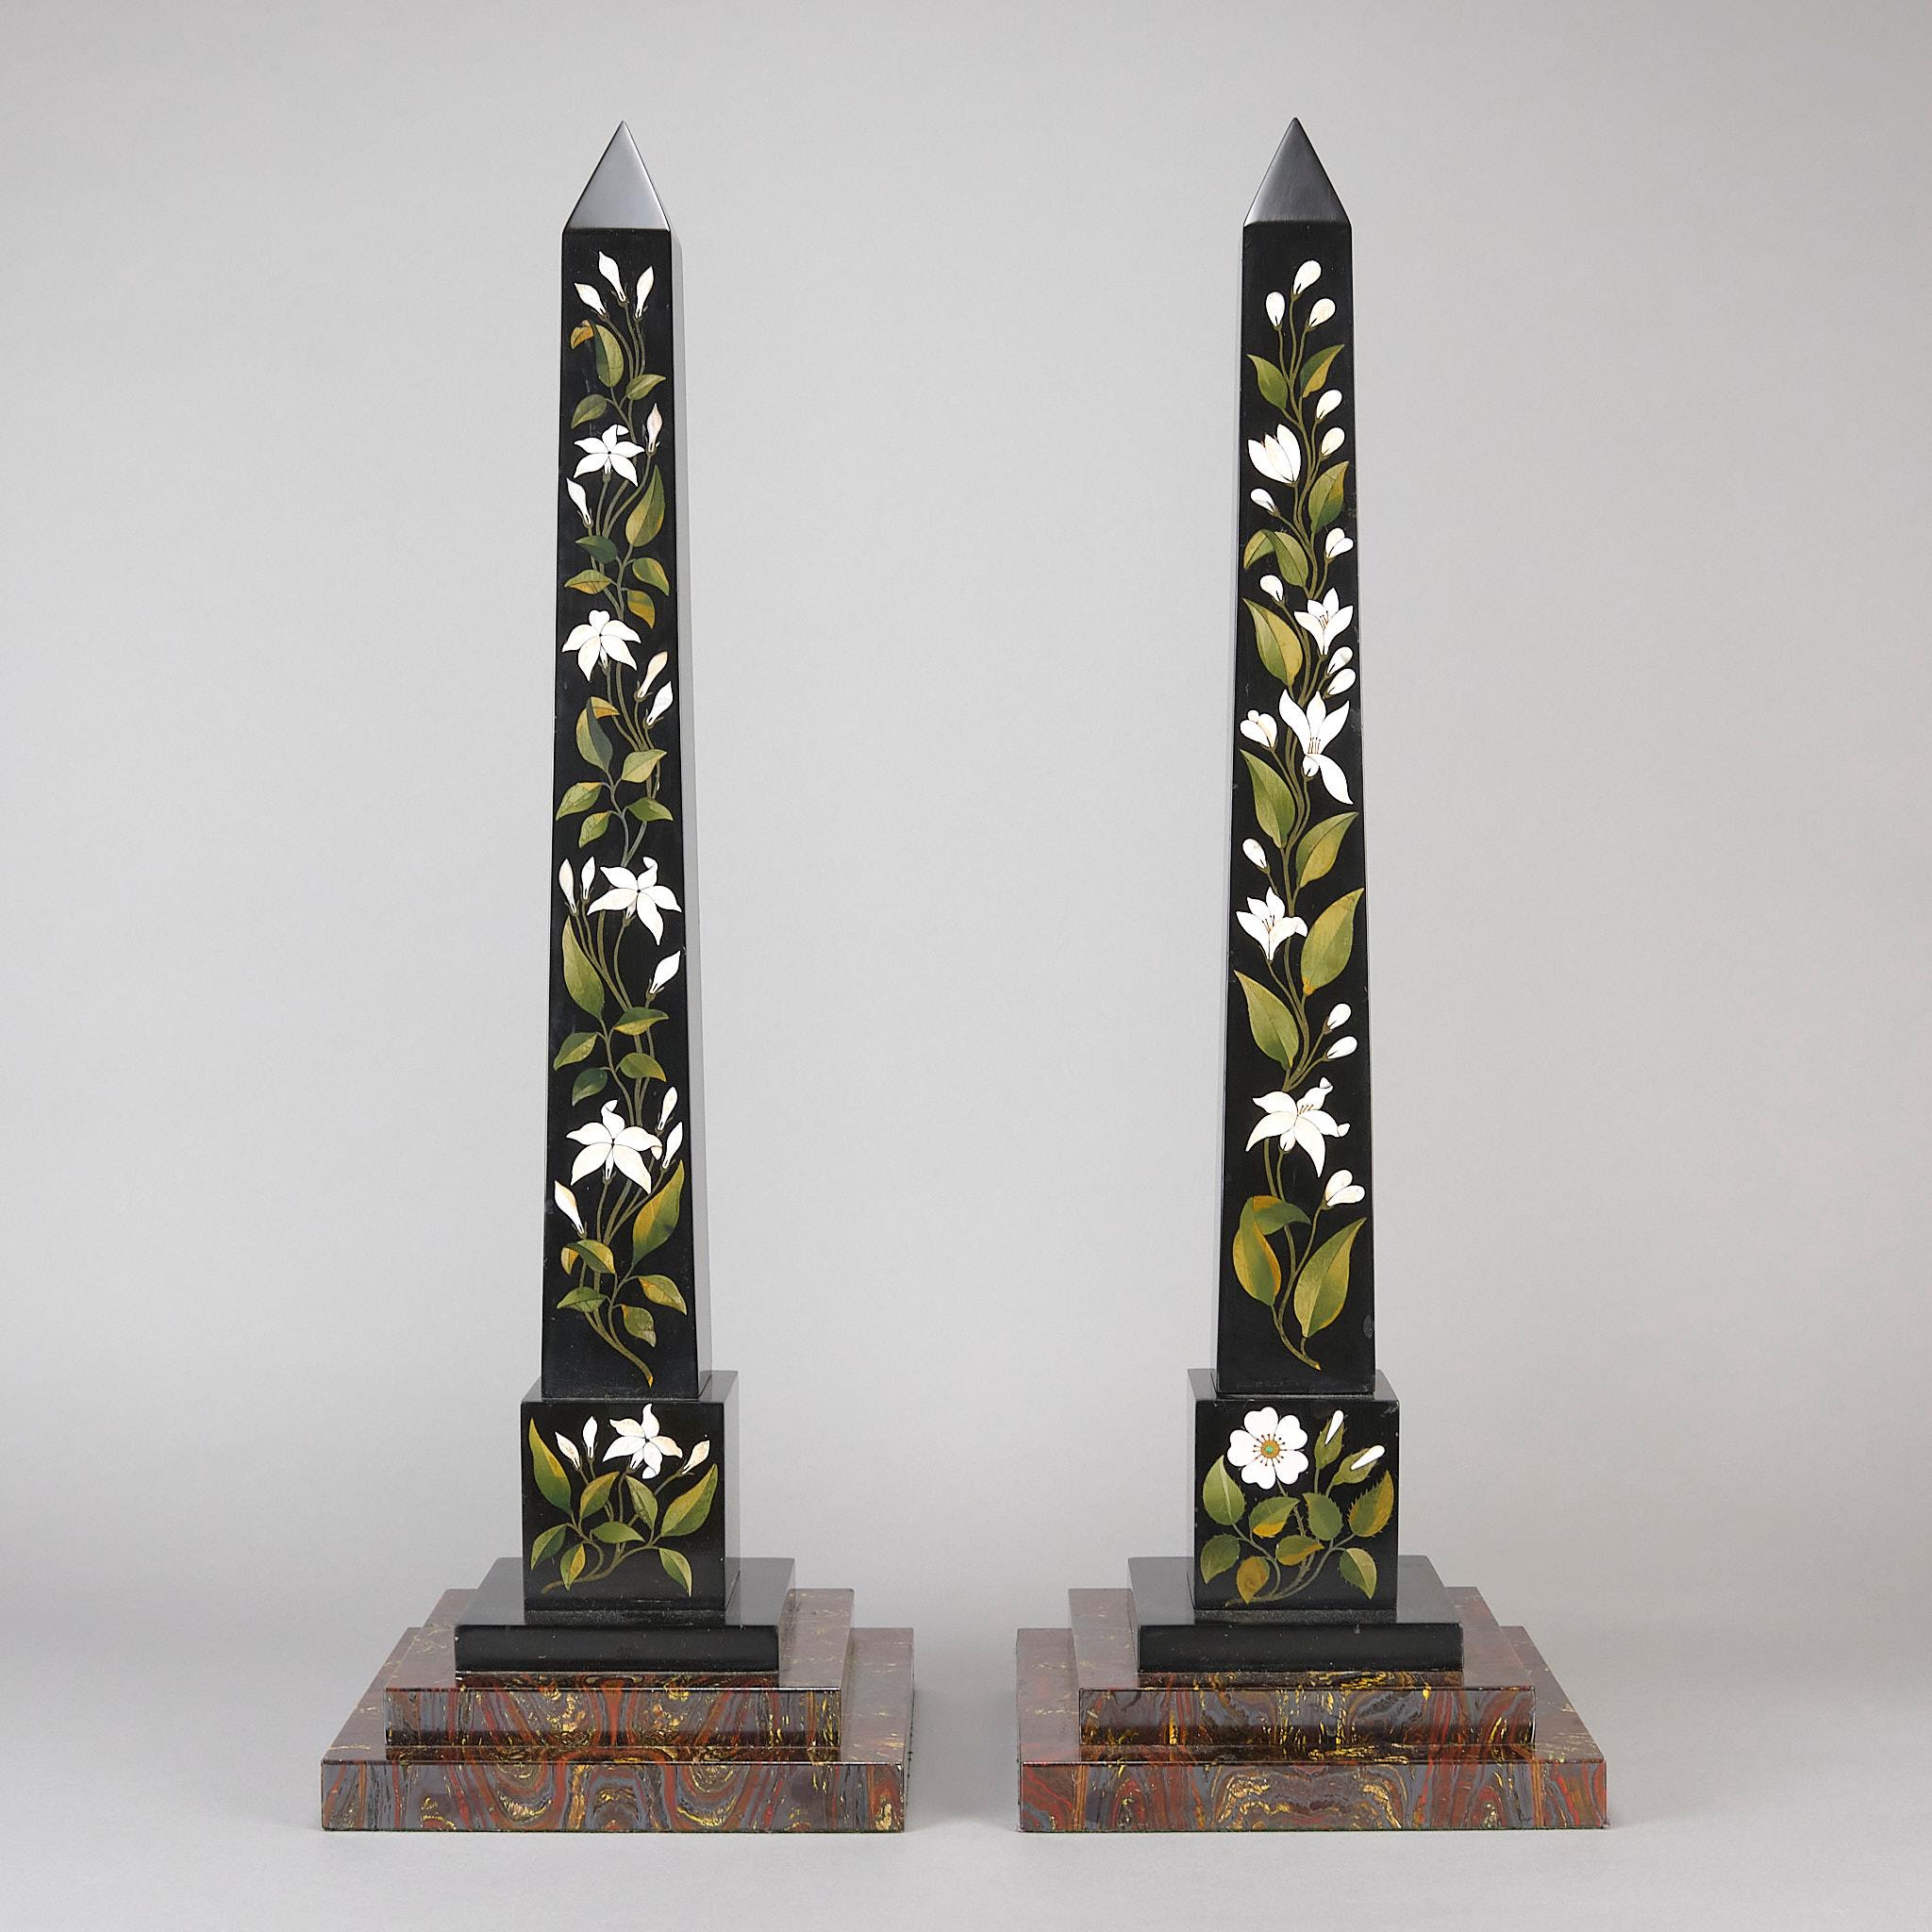 Excellente paire d'obélisques en marbre noir d'Ashford datant du milieu du XIXe siècle, incrustés d'une sélection de spécimens de marbres appliqués à l'avant de chaque colonne de manière décorative et florale, et reposant sur des pieds étalés à